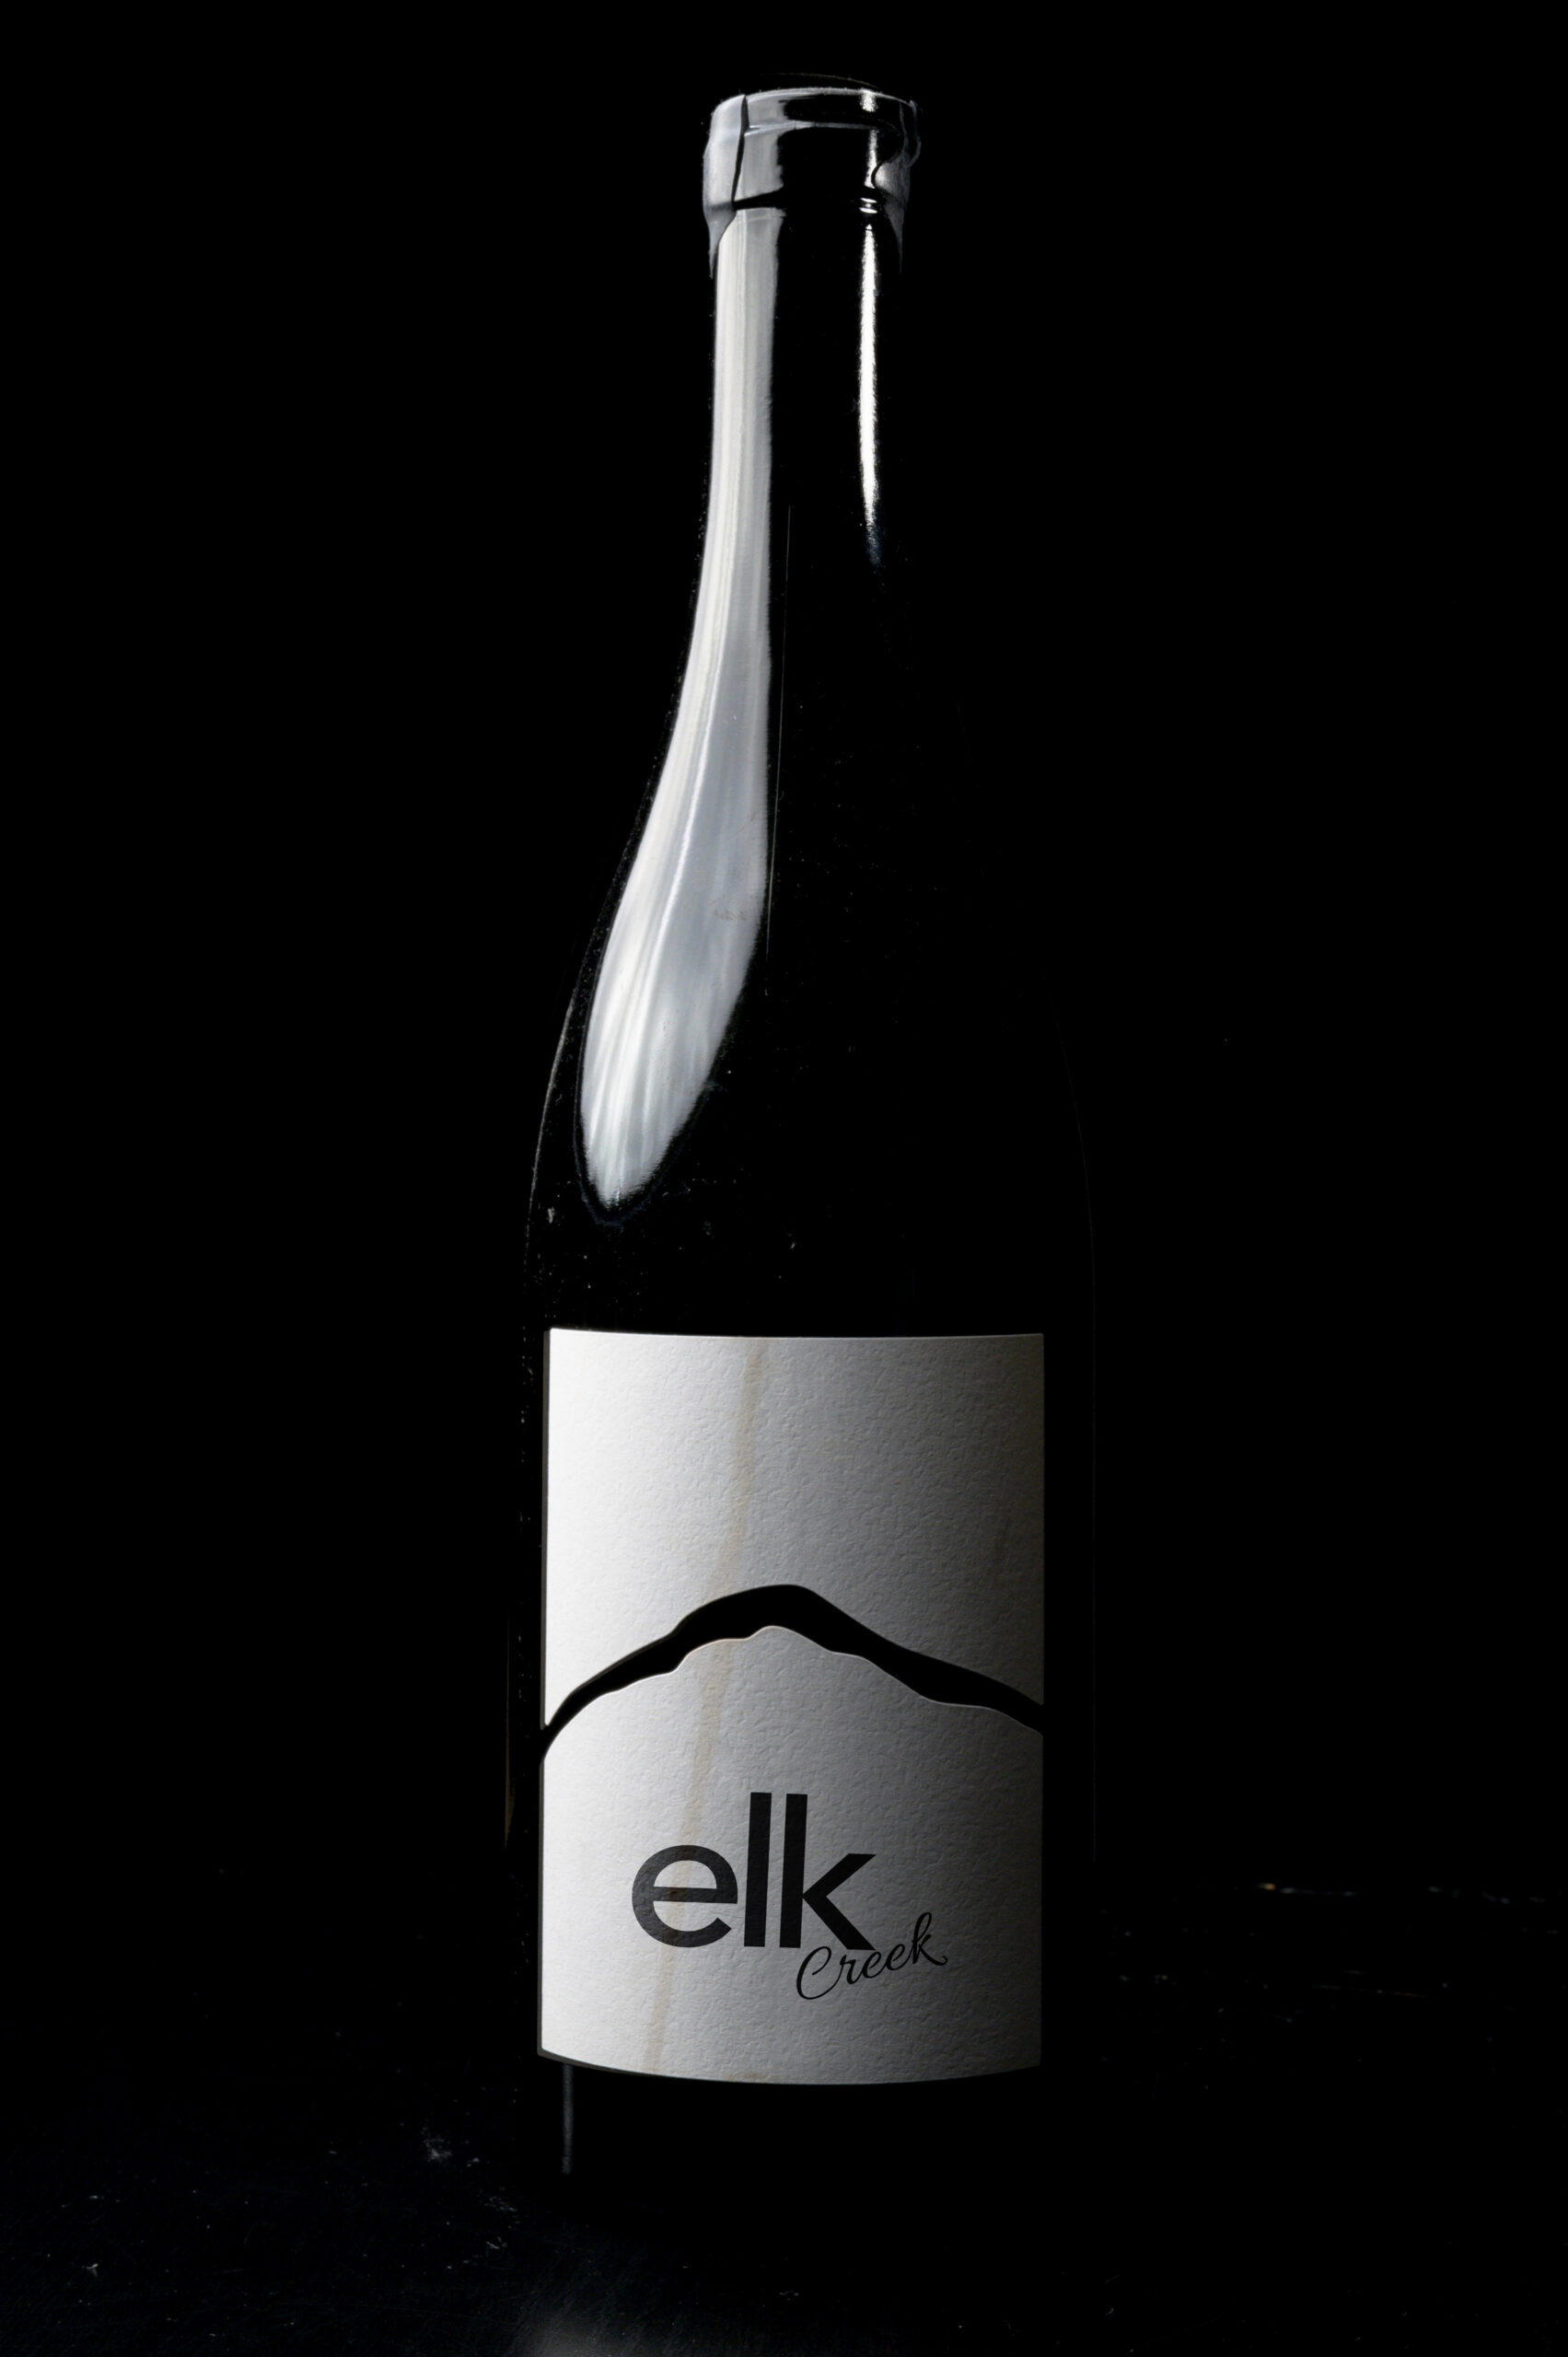 Packaging Design created for Elk Creek by Ace Digital